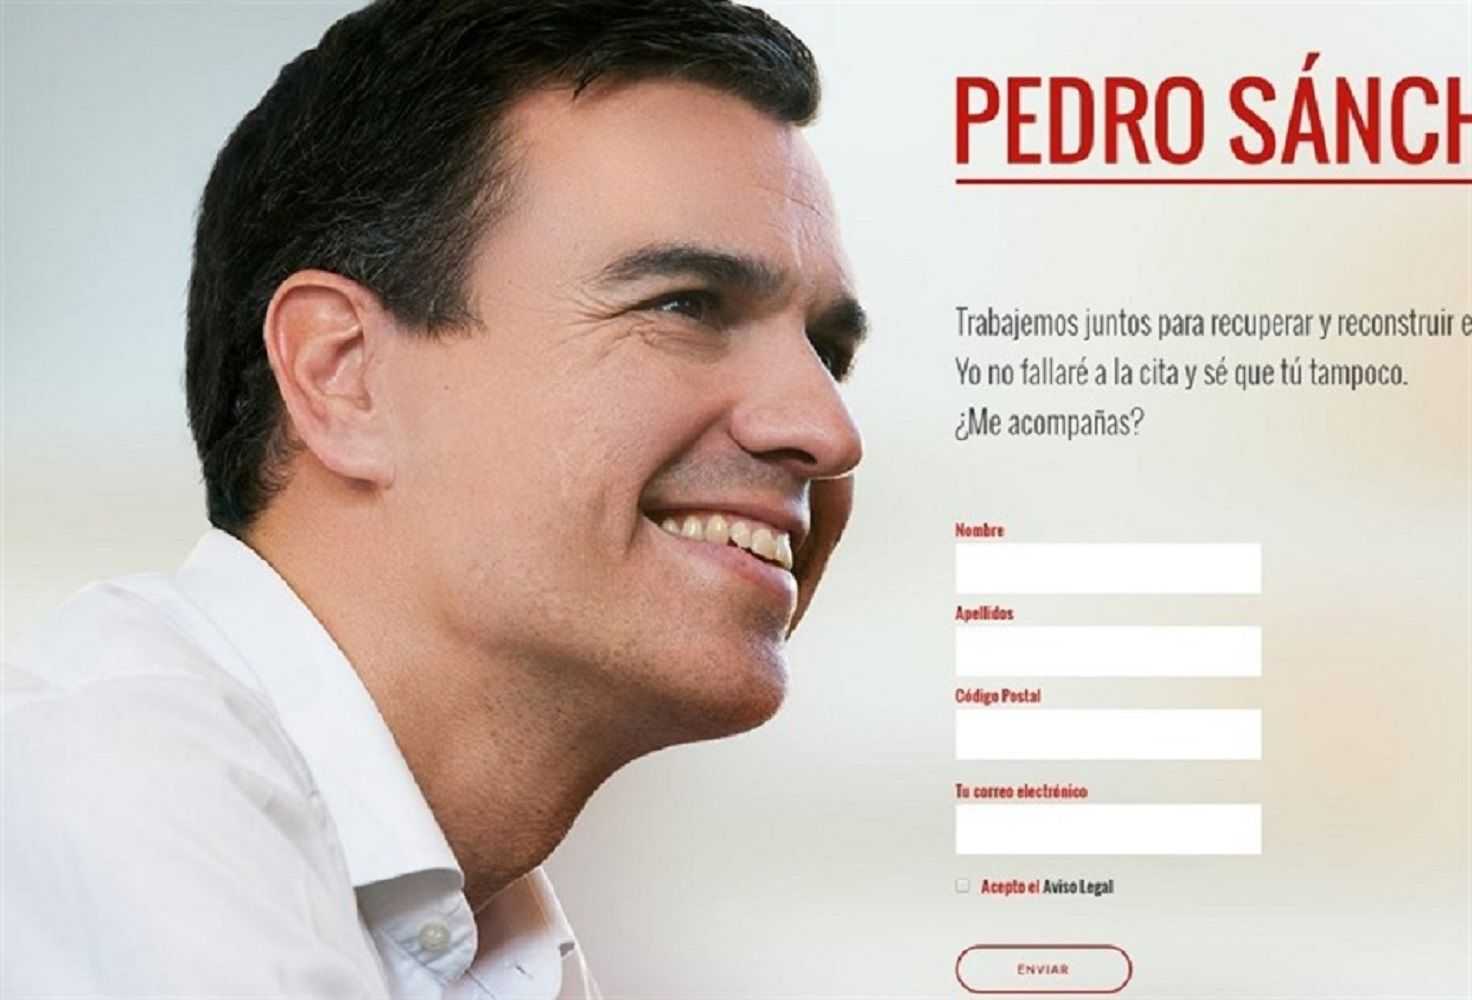 Sánchez crea un web per tornar a liderar el PSOE